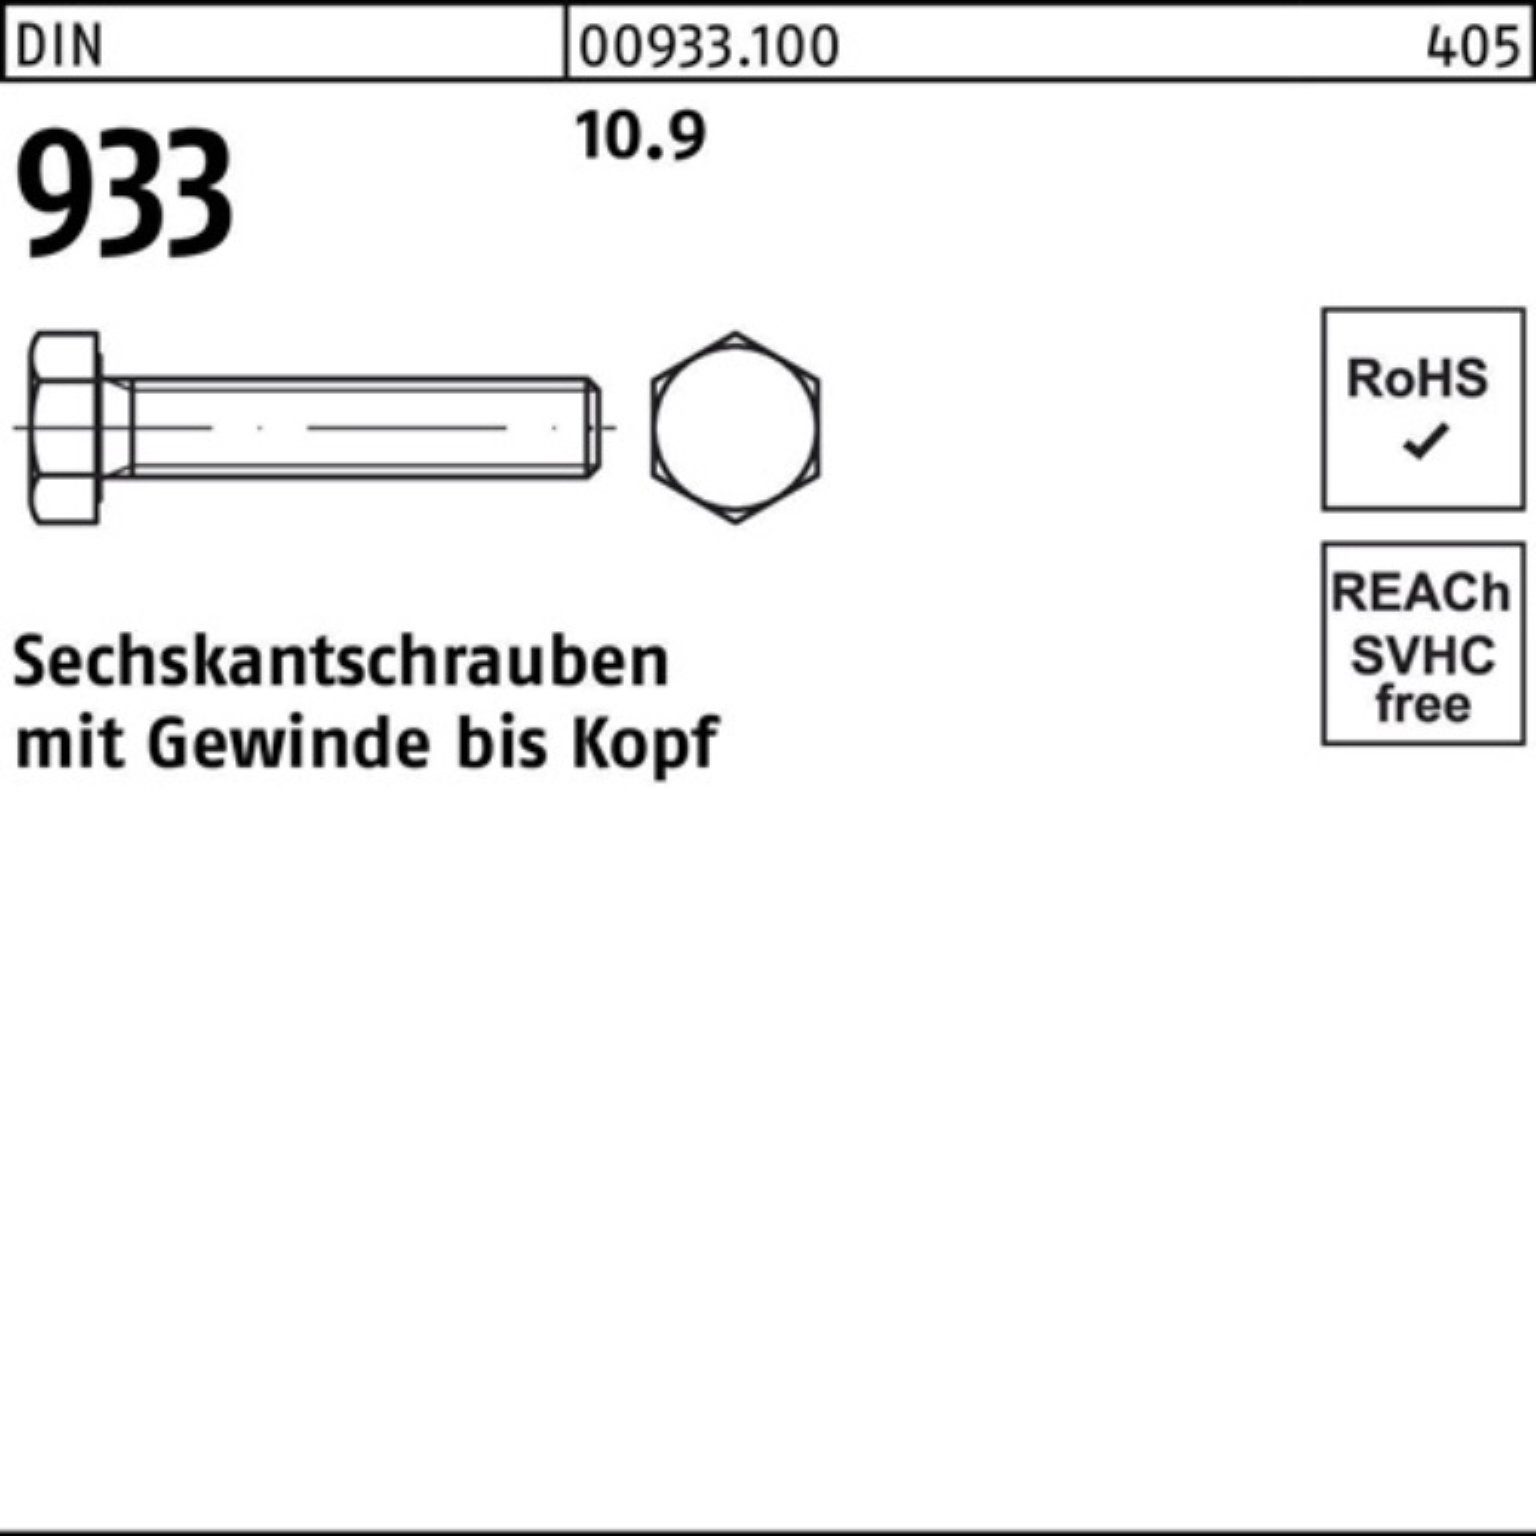 Reyher Sechskantschraube 100er Stück Pack DIN 93 M10x 933 100 DIN VG 10.9 70 Sechskantschraube